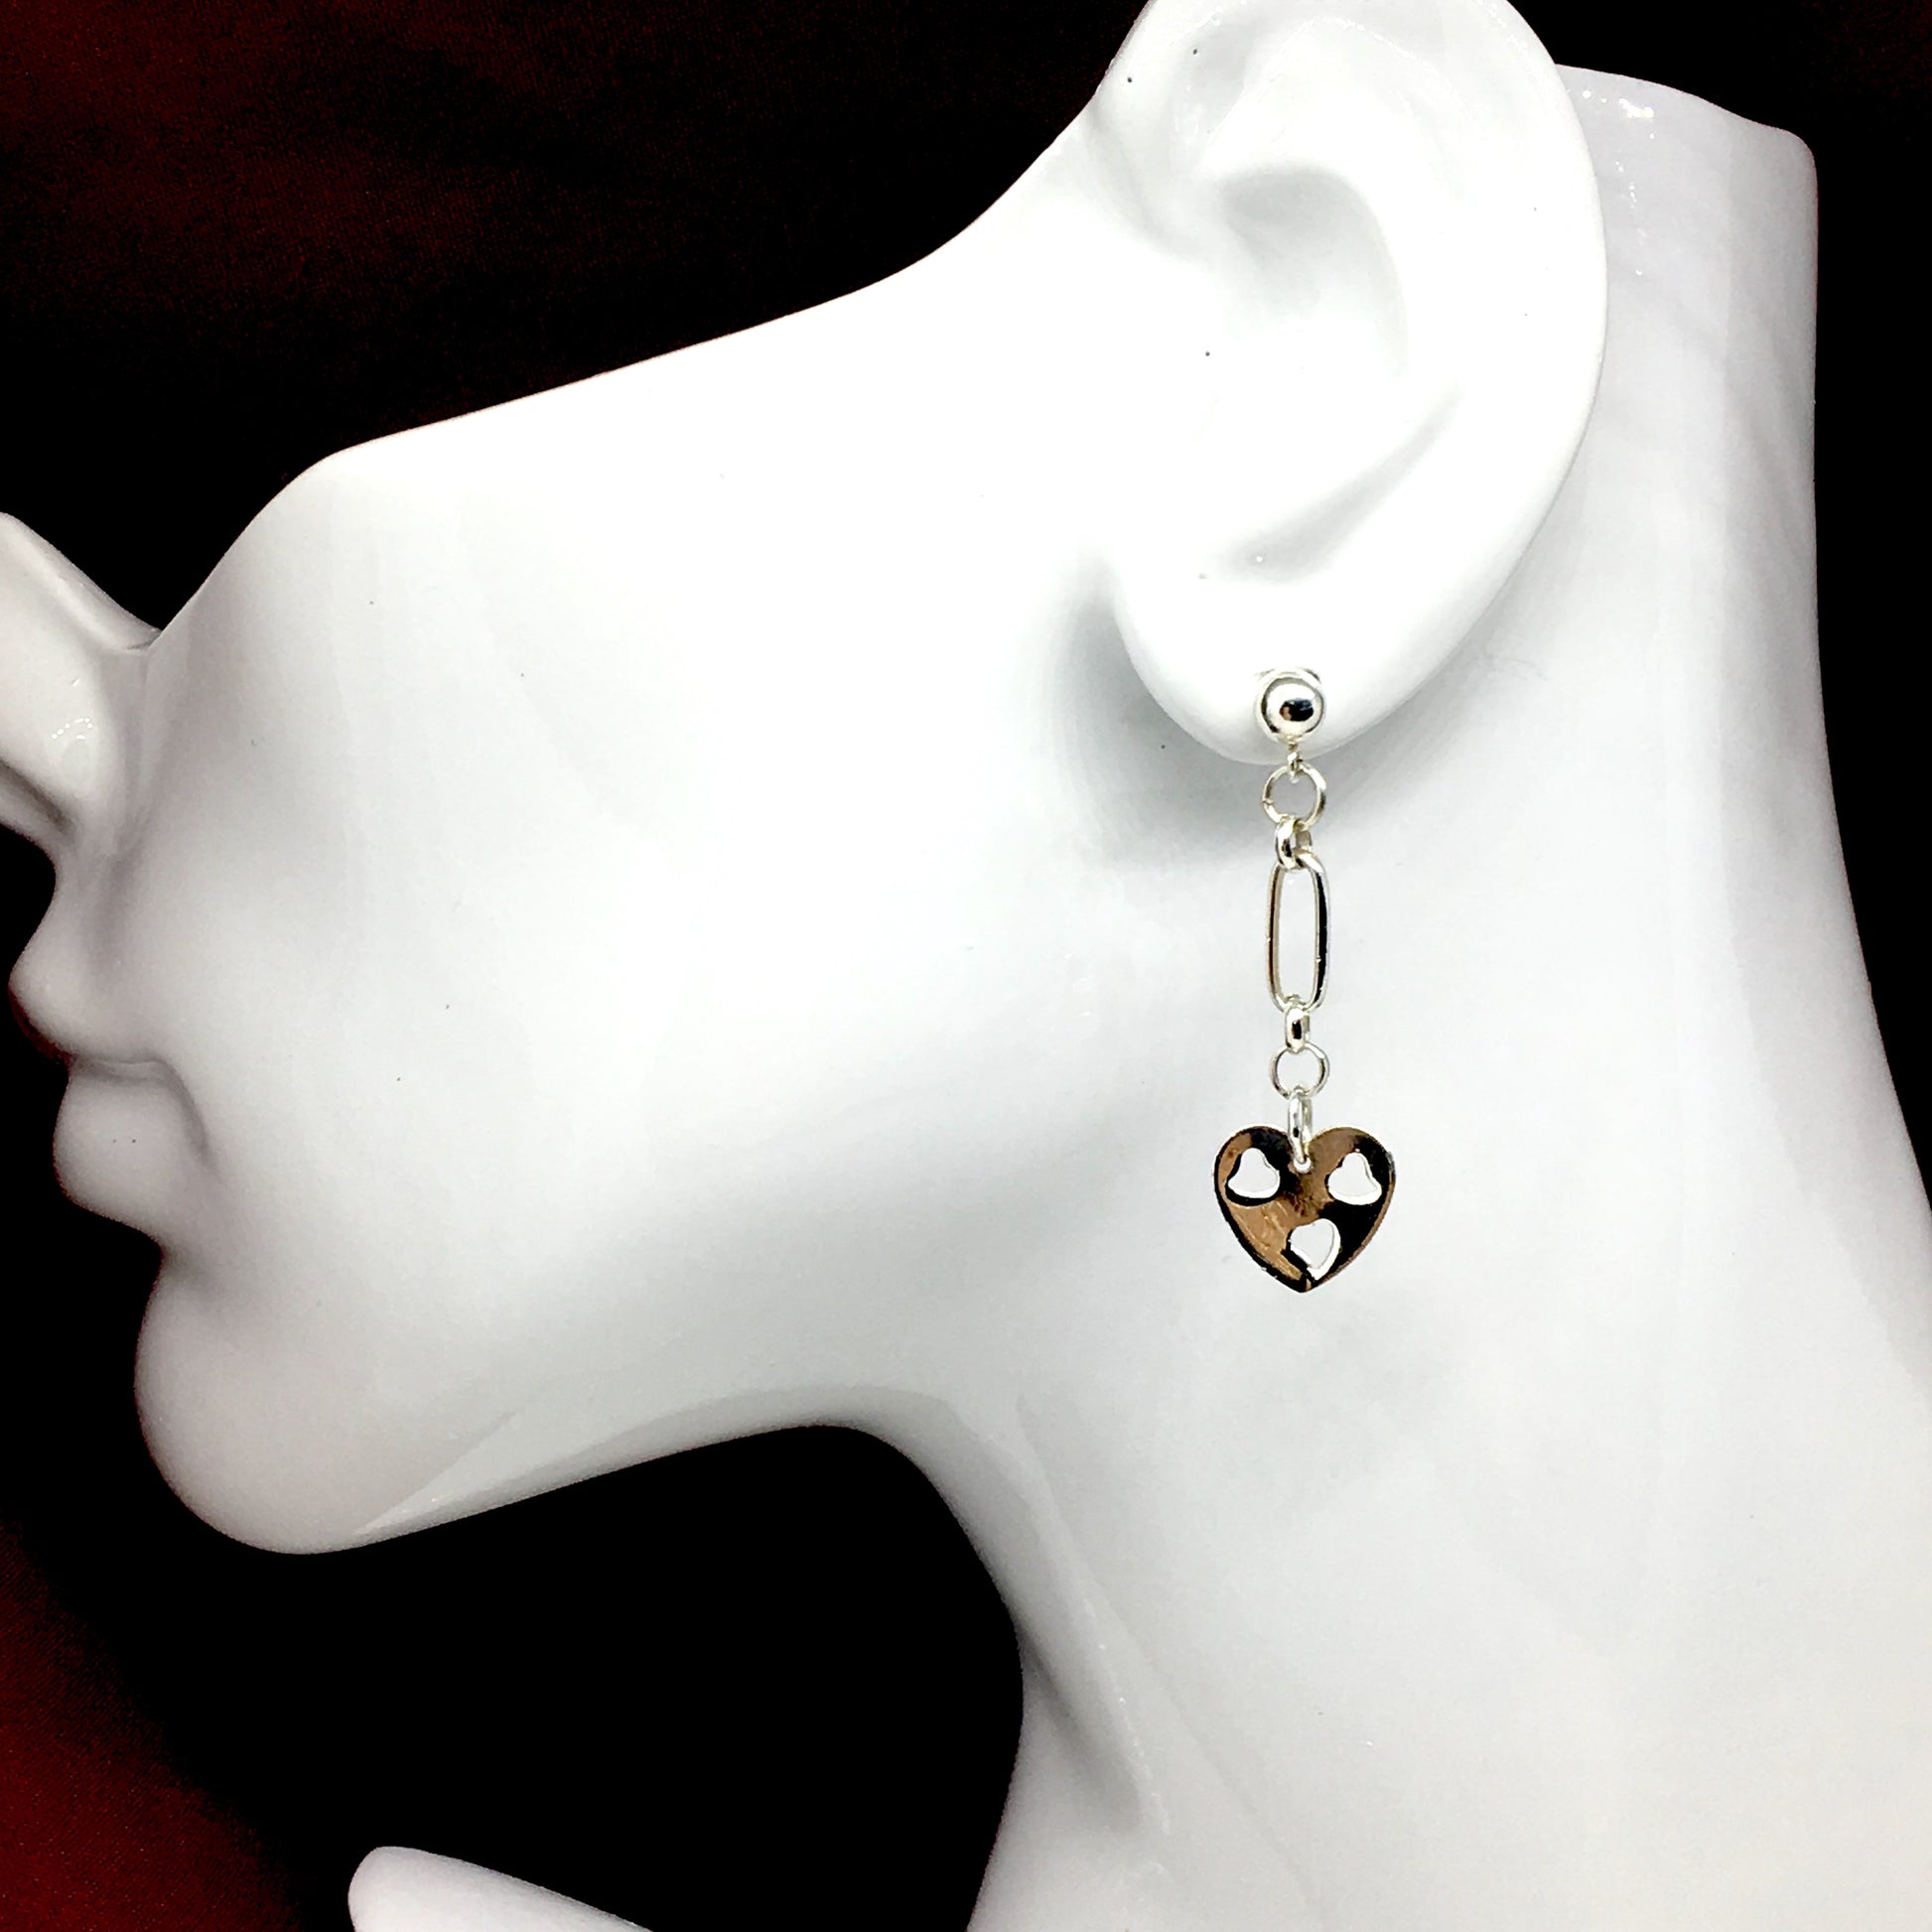 Earrings | Fun Flirty Sterling Silver Heart Cut-out Design Dangle Earrings